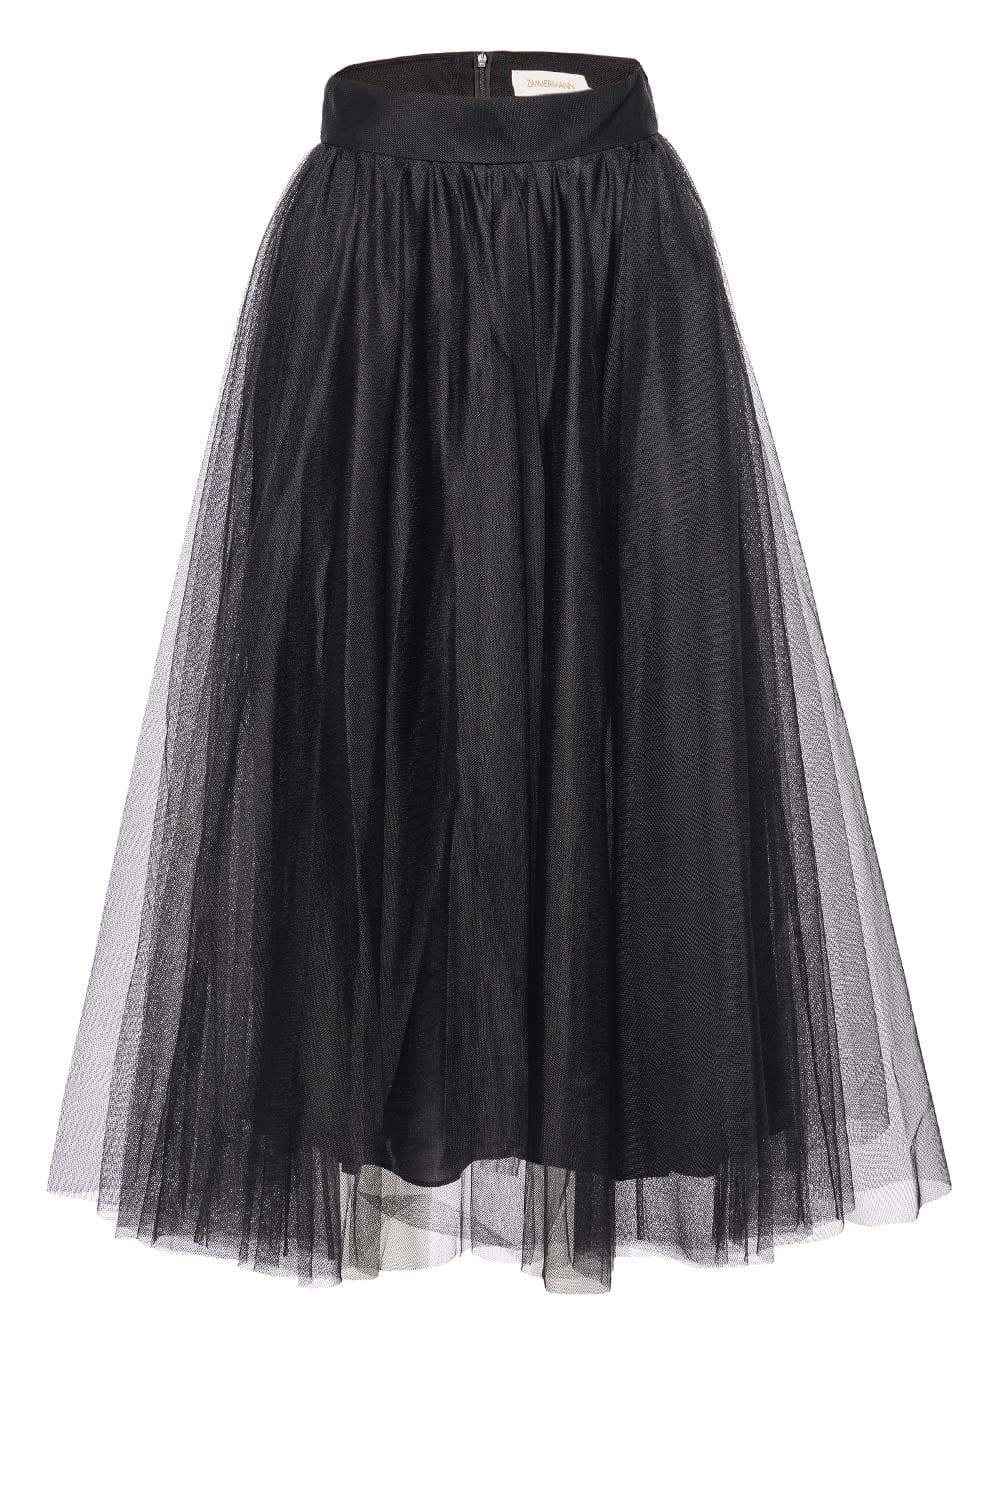 ZIMMERMANN Black Tulle Midi Skirt